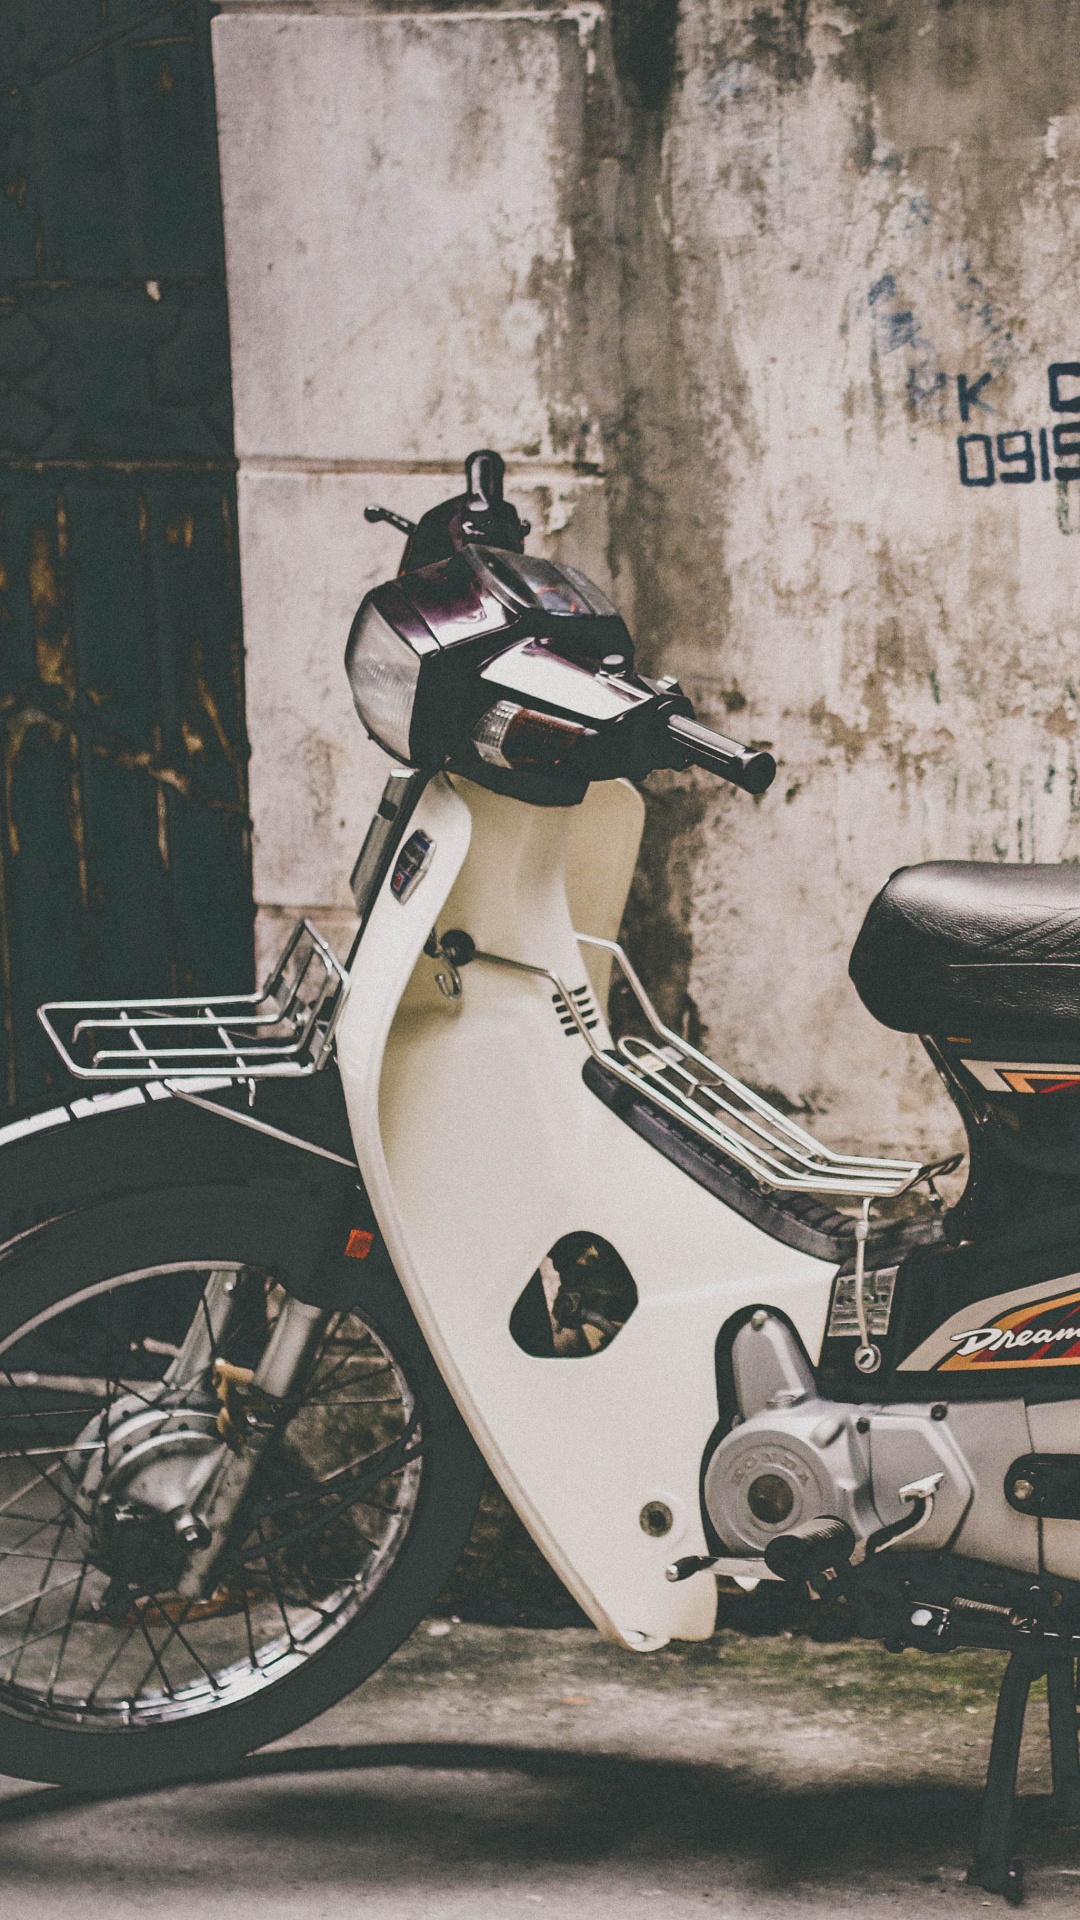 自行车, 轻便摩托车, 发言, 汽车轮胎, 胡志明市 壁纸 1080x1920 允许